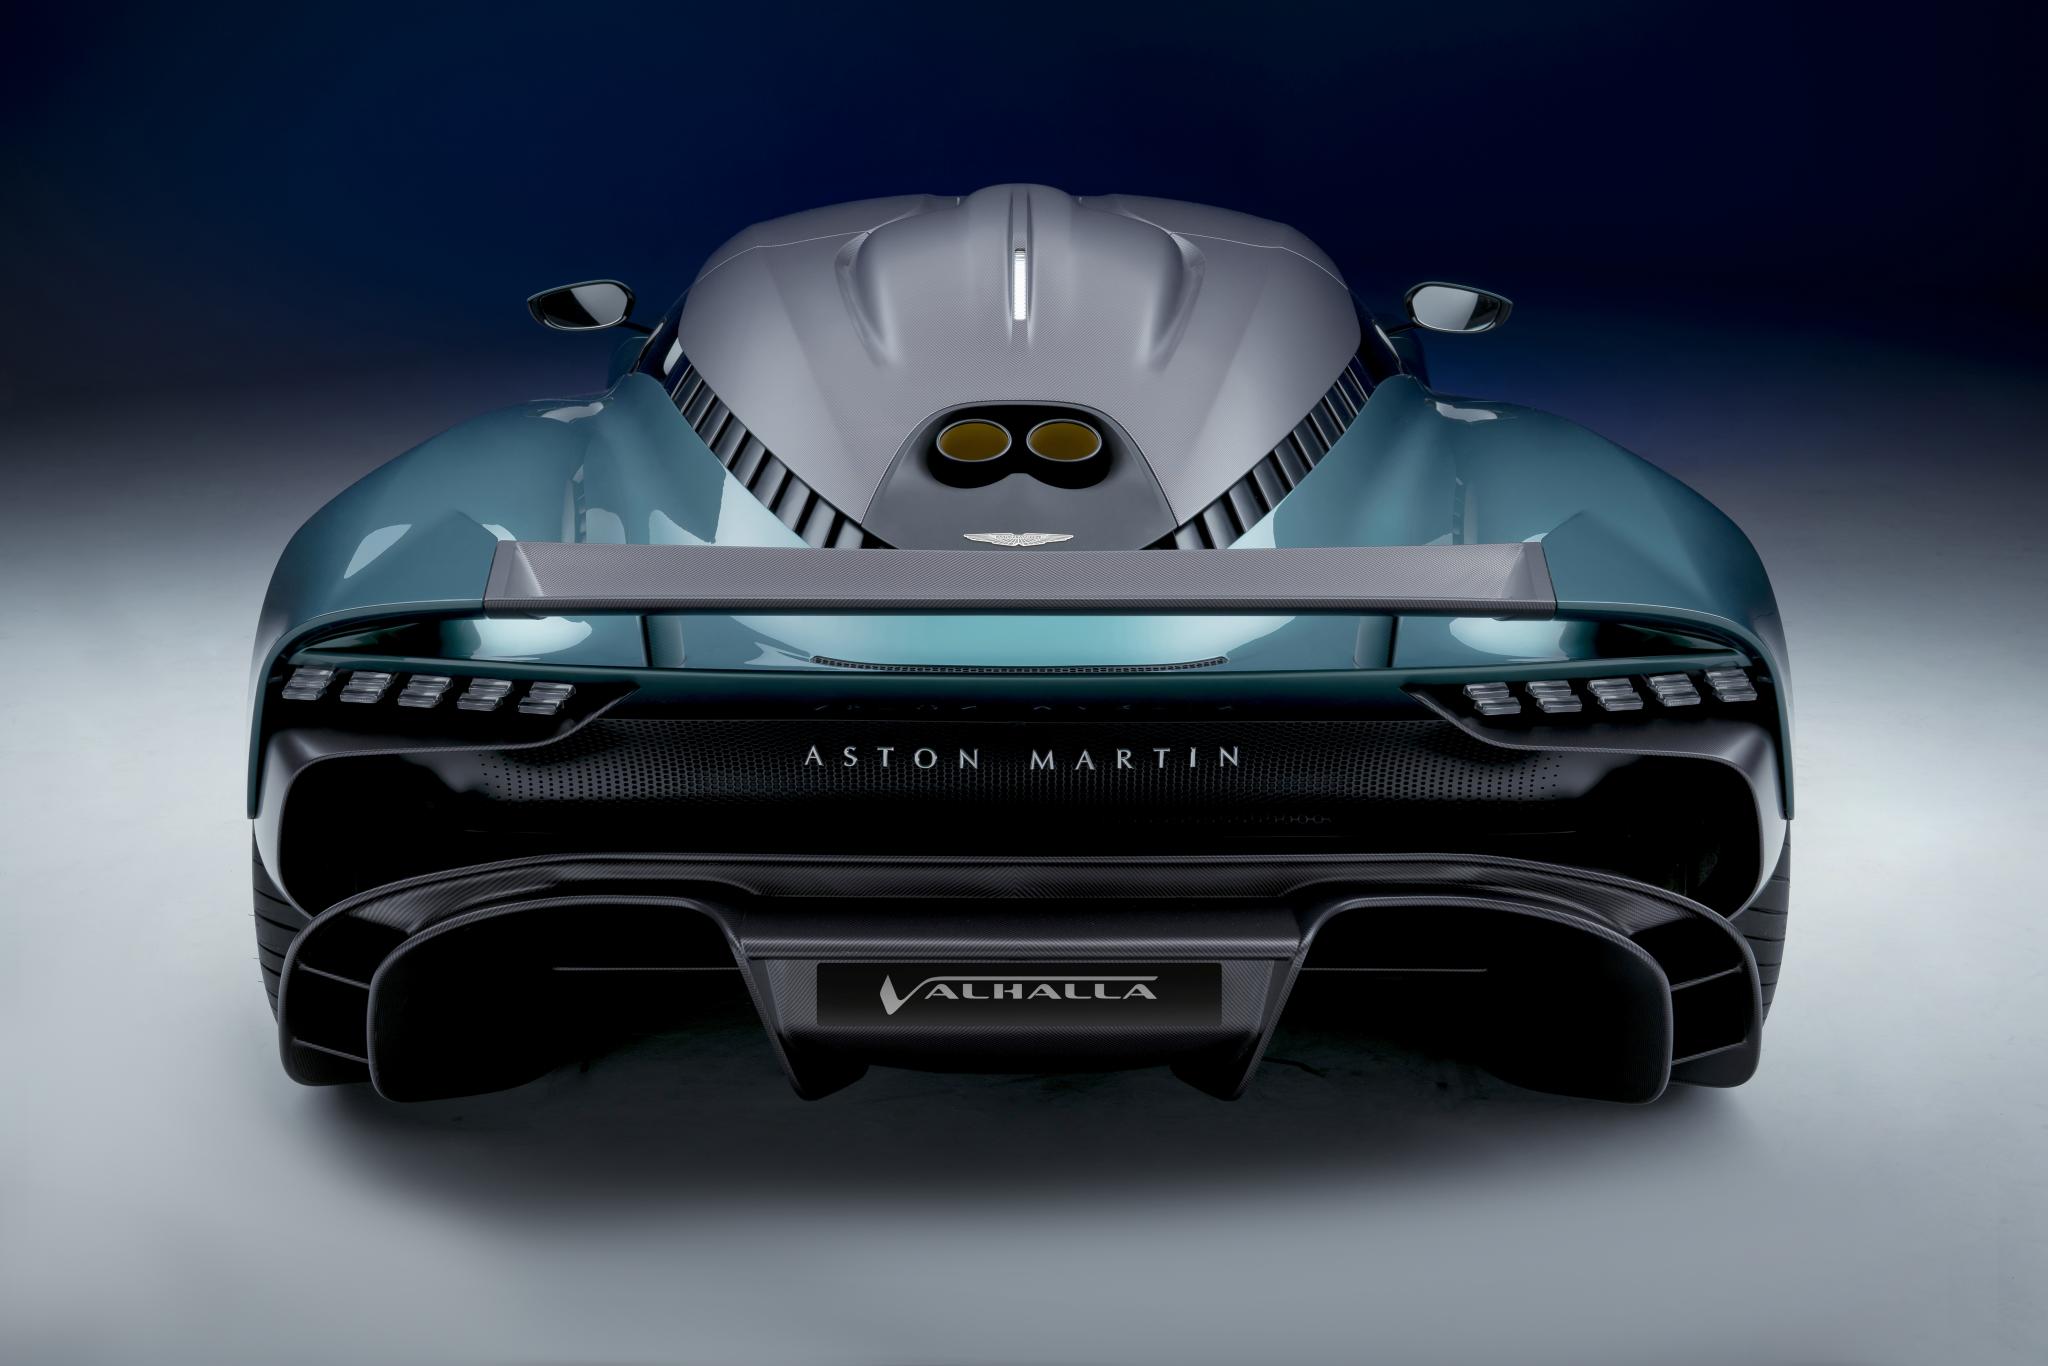 resize_Aston Martin Valhalla04.jpg